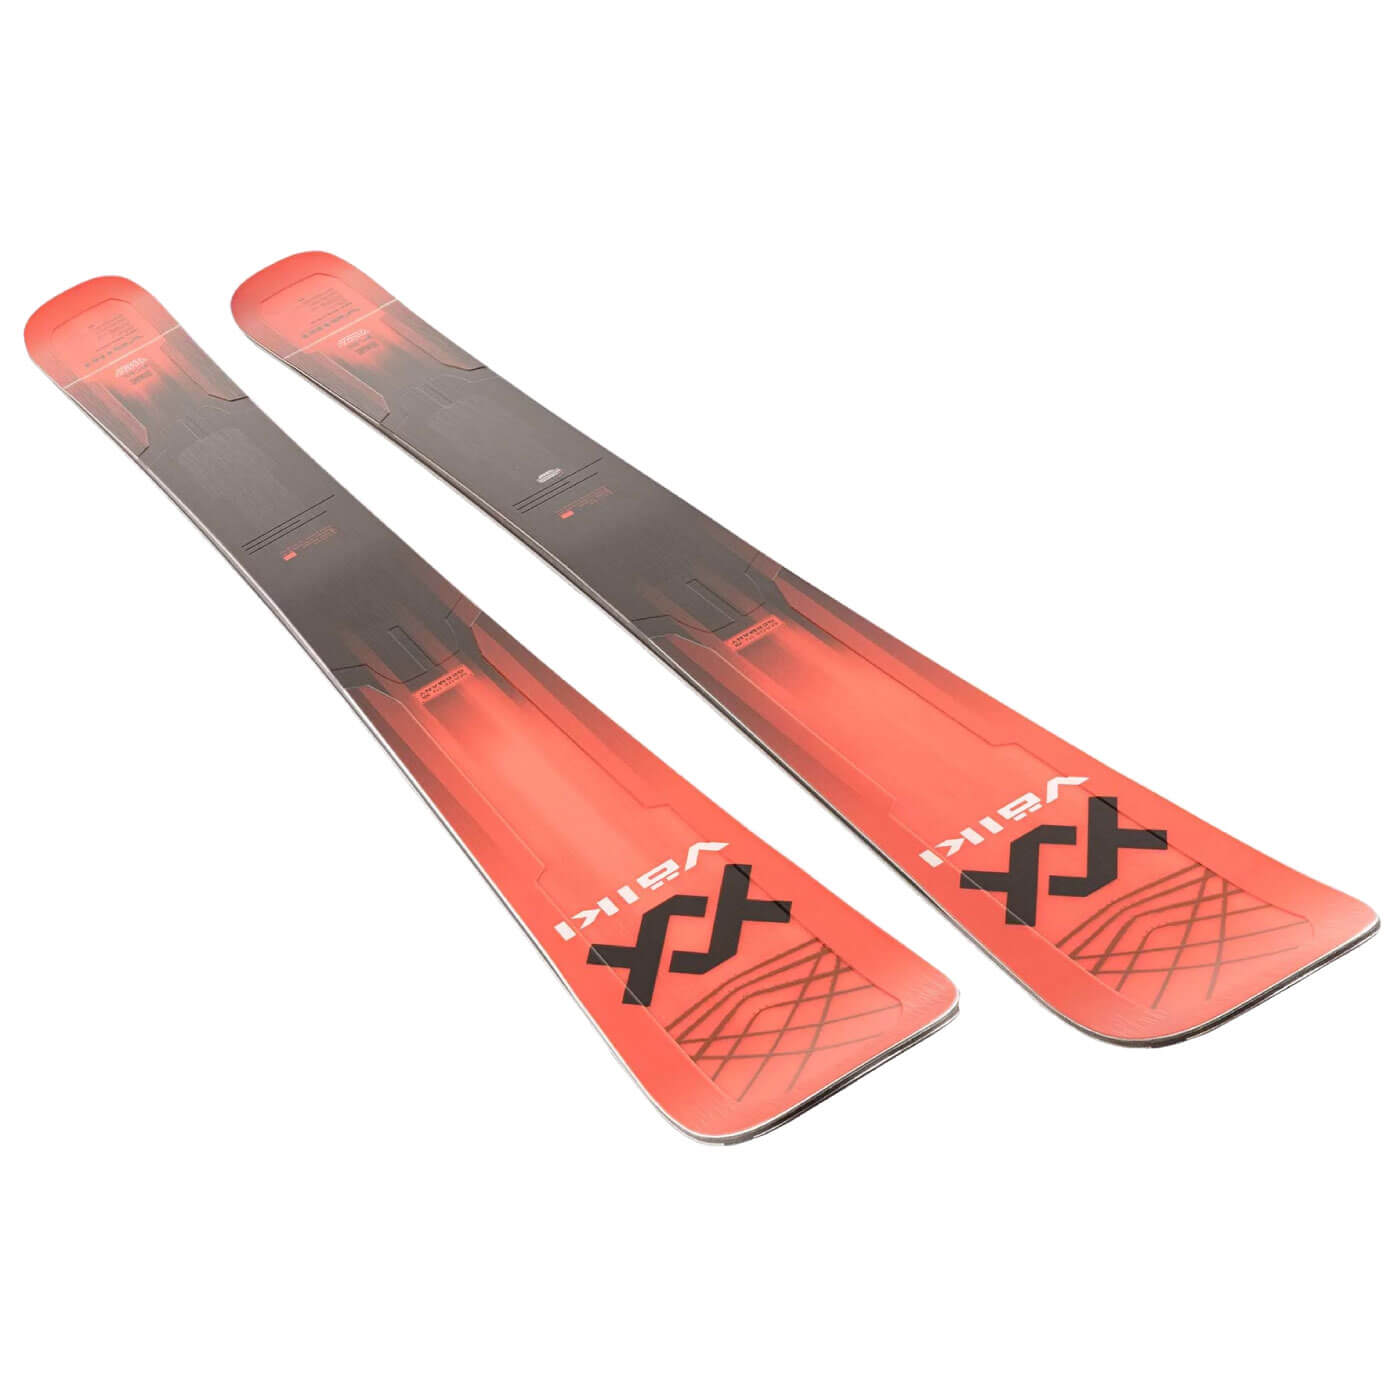 Volkl Men's M6 Mantra Alpine Ski 2022 